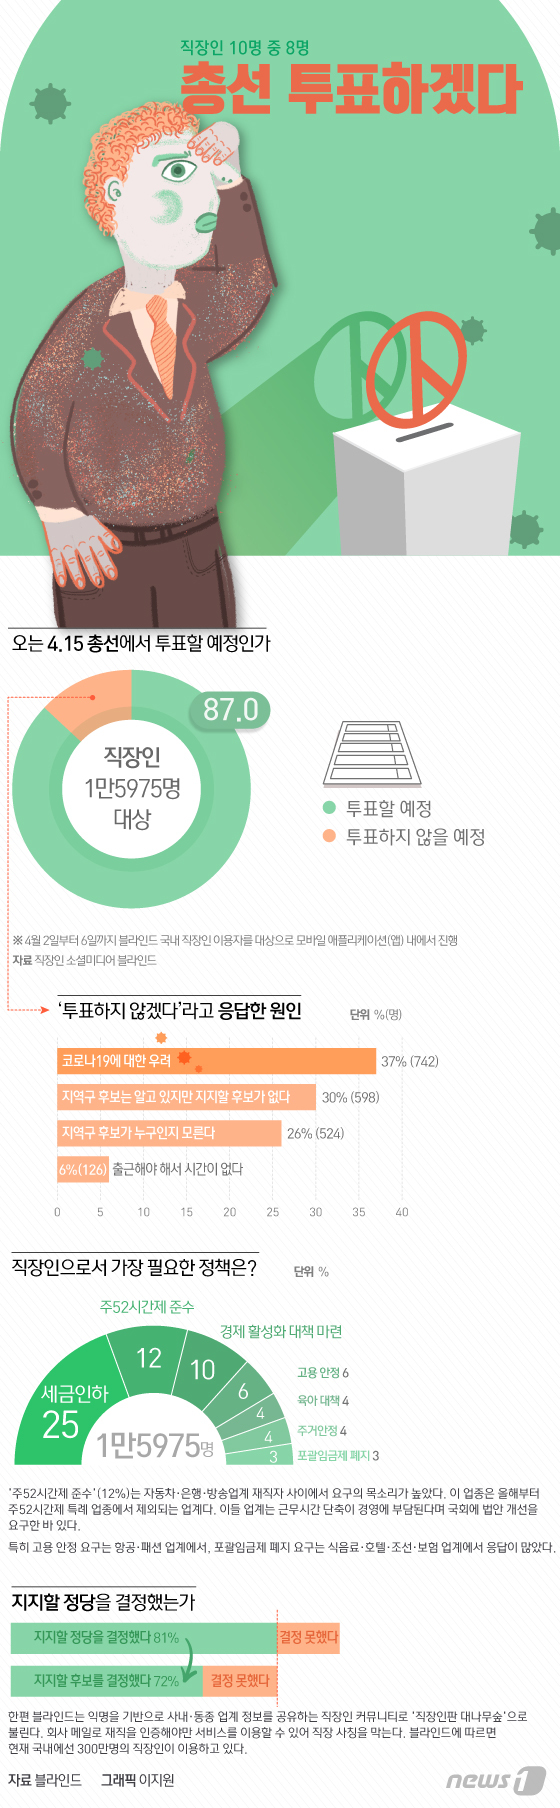 [그래픽뉴스] 직장인 10명 중 8명 총선 투표하겠다